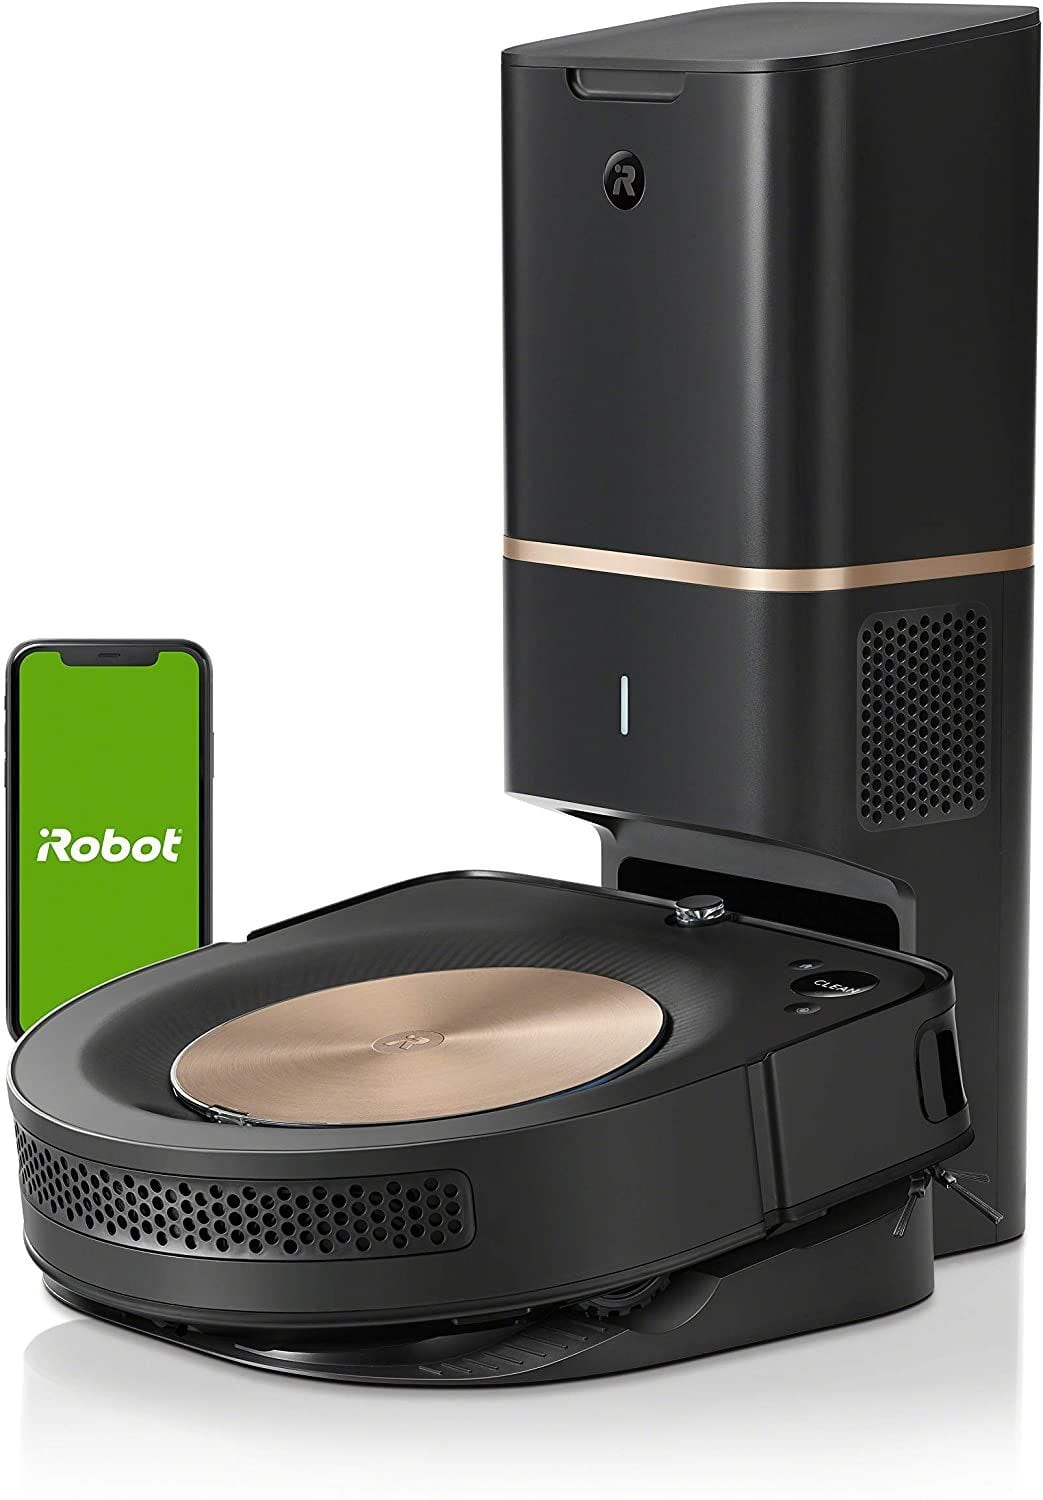 iRobot Roomba s9+, available on Amazon.